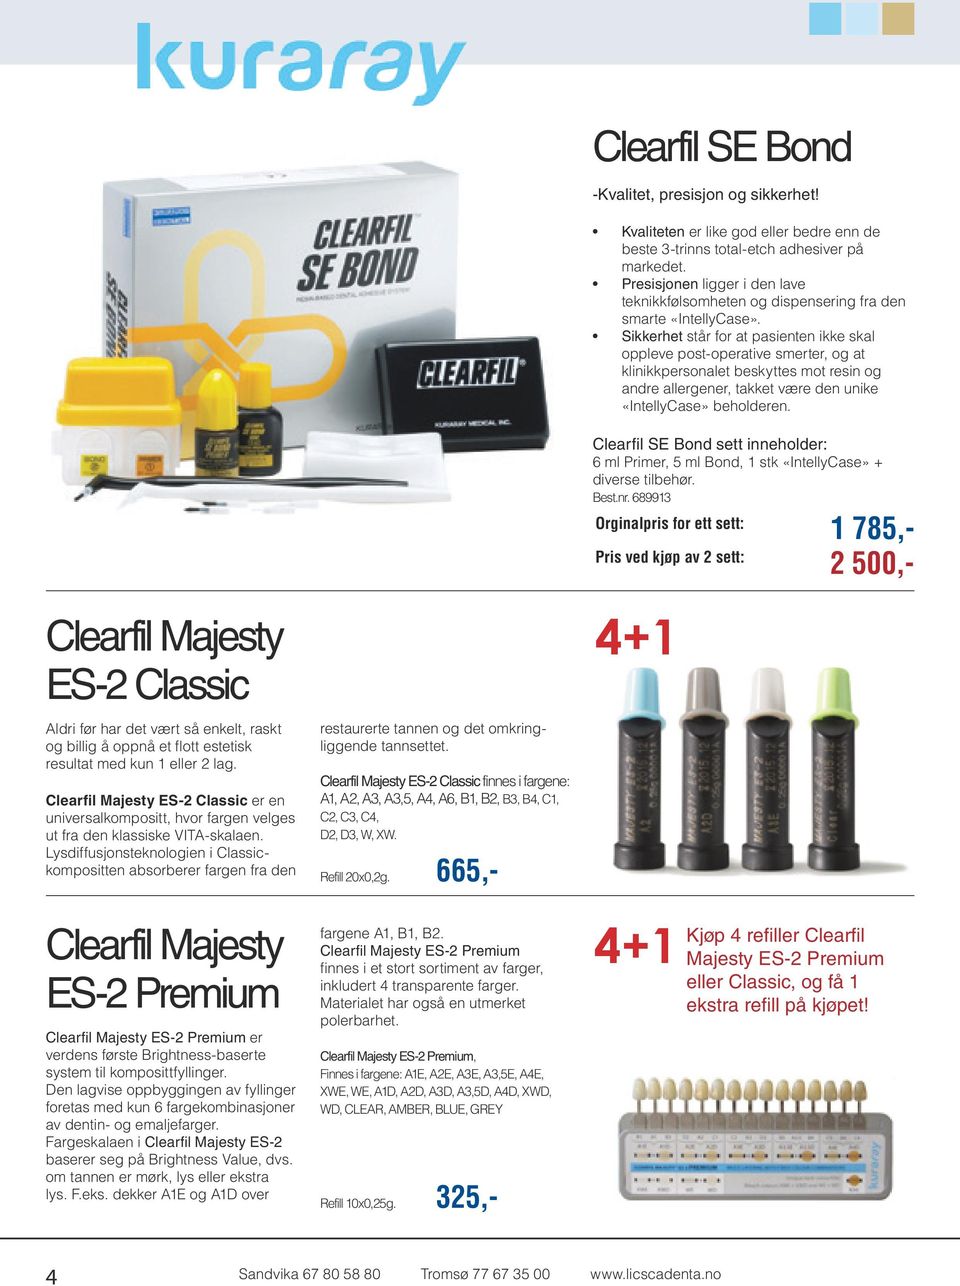 Lysdiffusjonsteknologien i Classickompositten absorberer fargen fra den Clearfil Majesty ES-2 Premium Clearfil Majesty ES-2 Premium er verdens første Brightness-baserte system til komposittfyllinger.